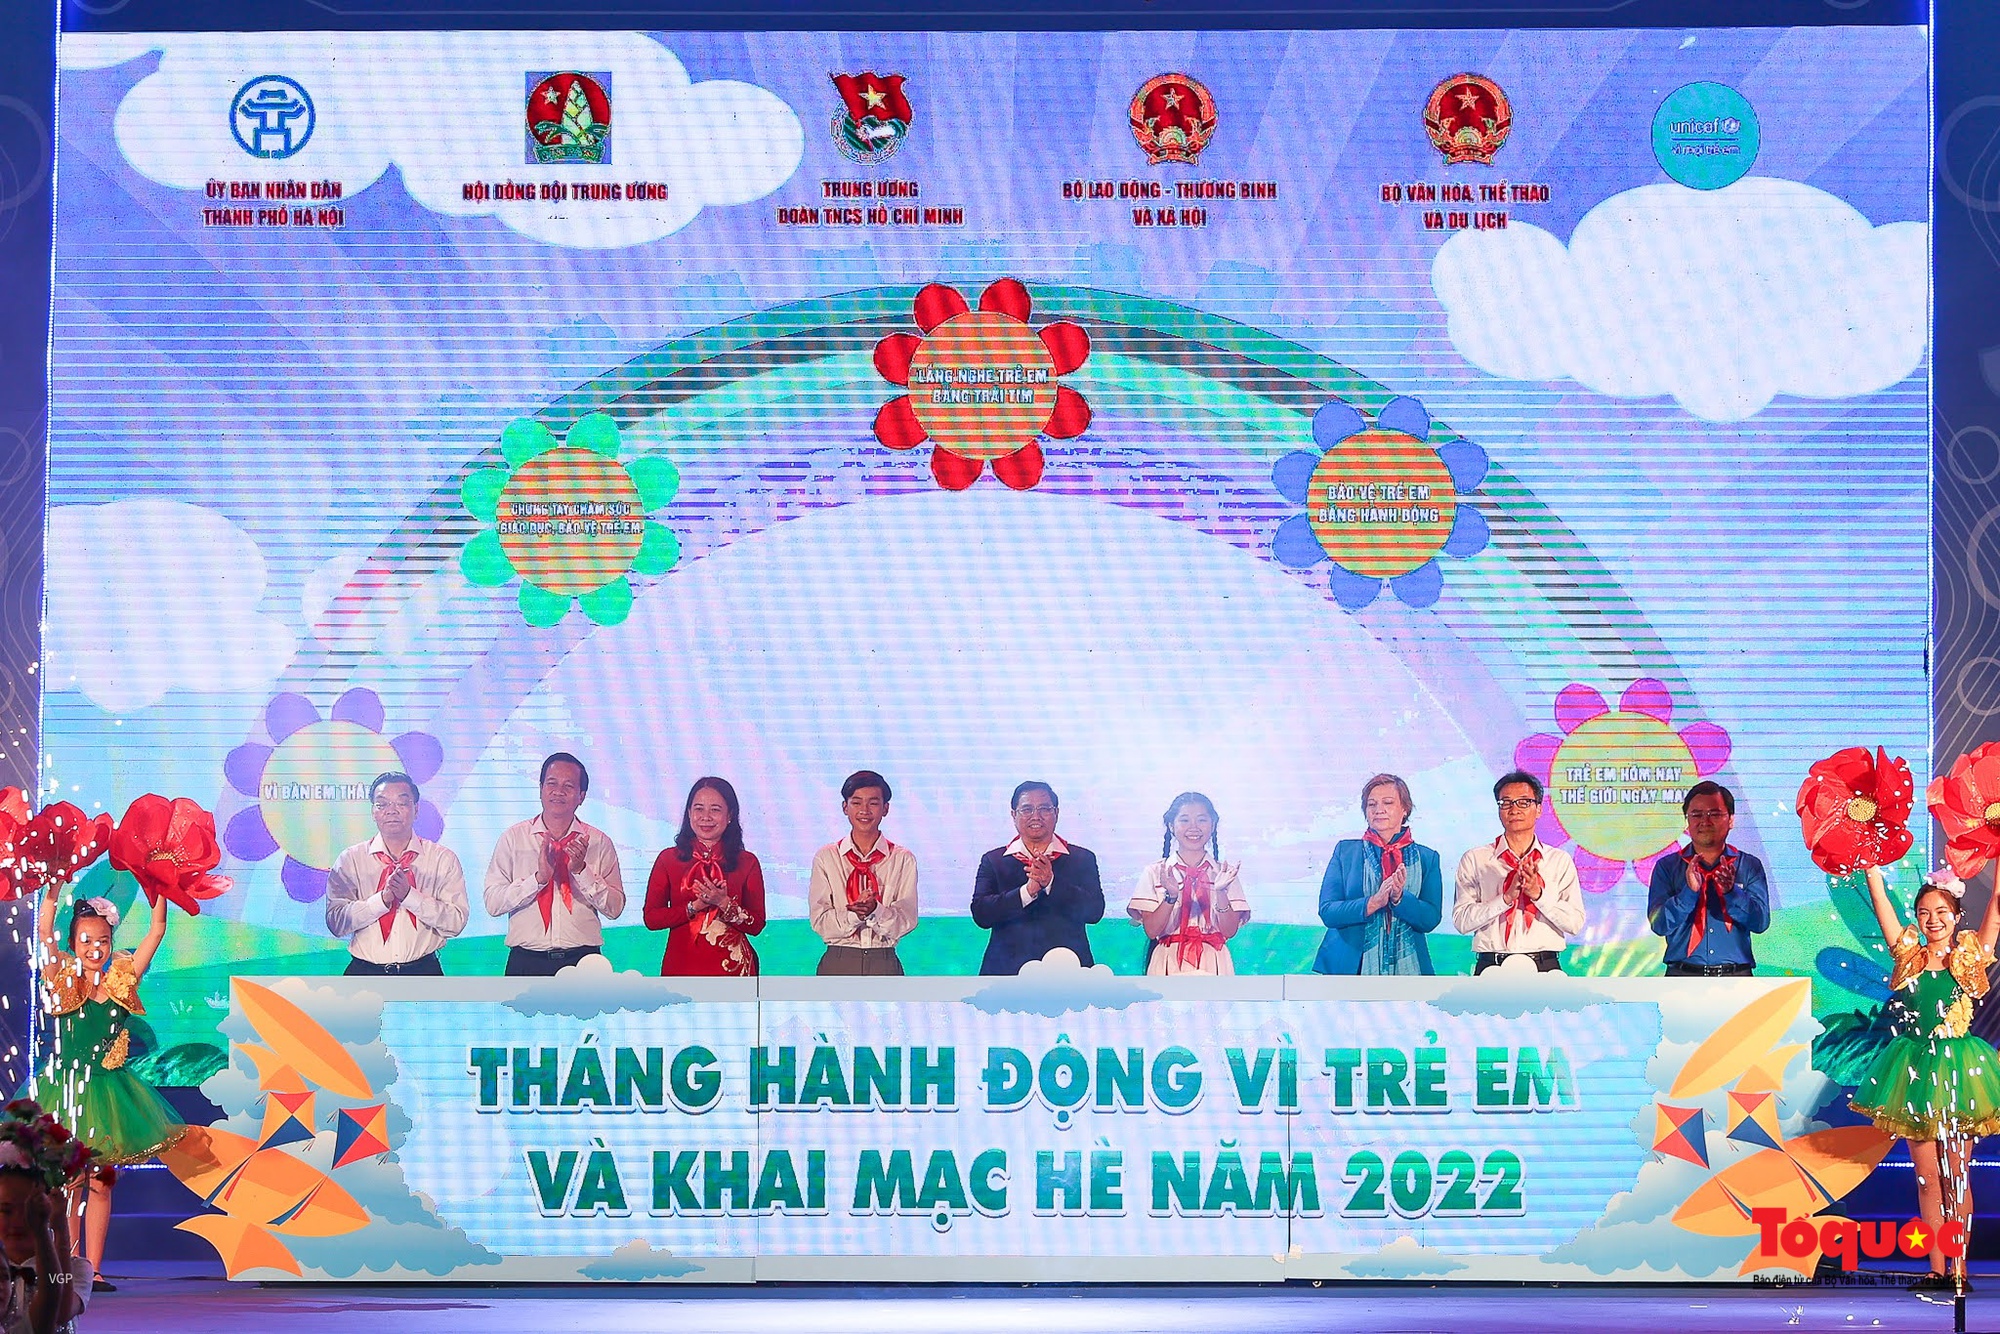 Thủ tướng Phạm Minh Chính dự Lễ phát động Tháng hành động vì trẻ em và khai mạc hè năm 2022 - Ảnh 7.